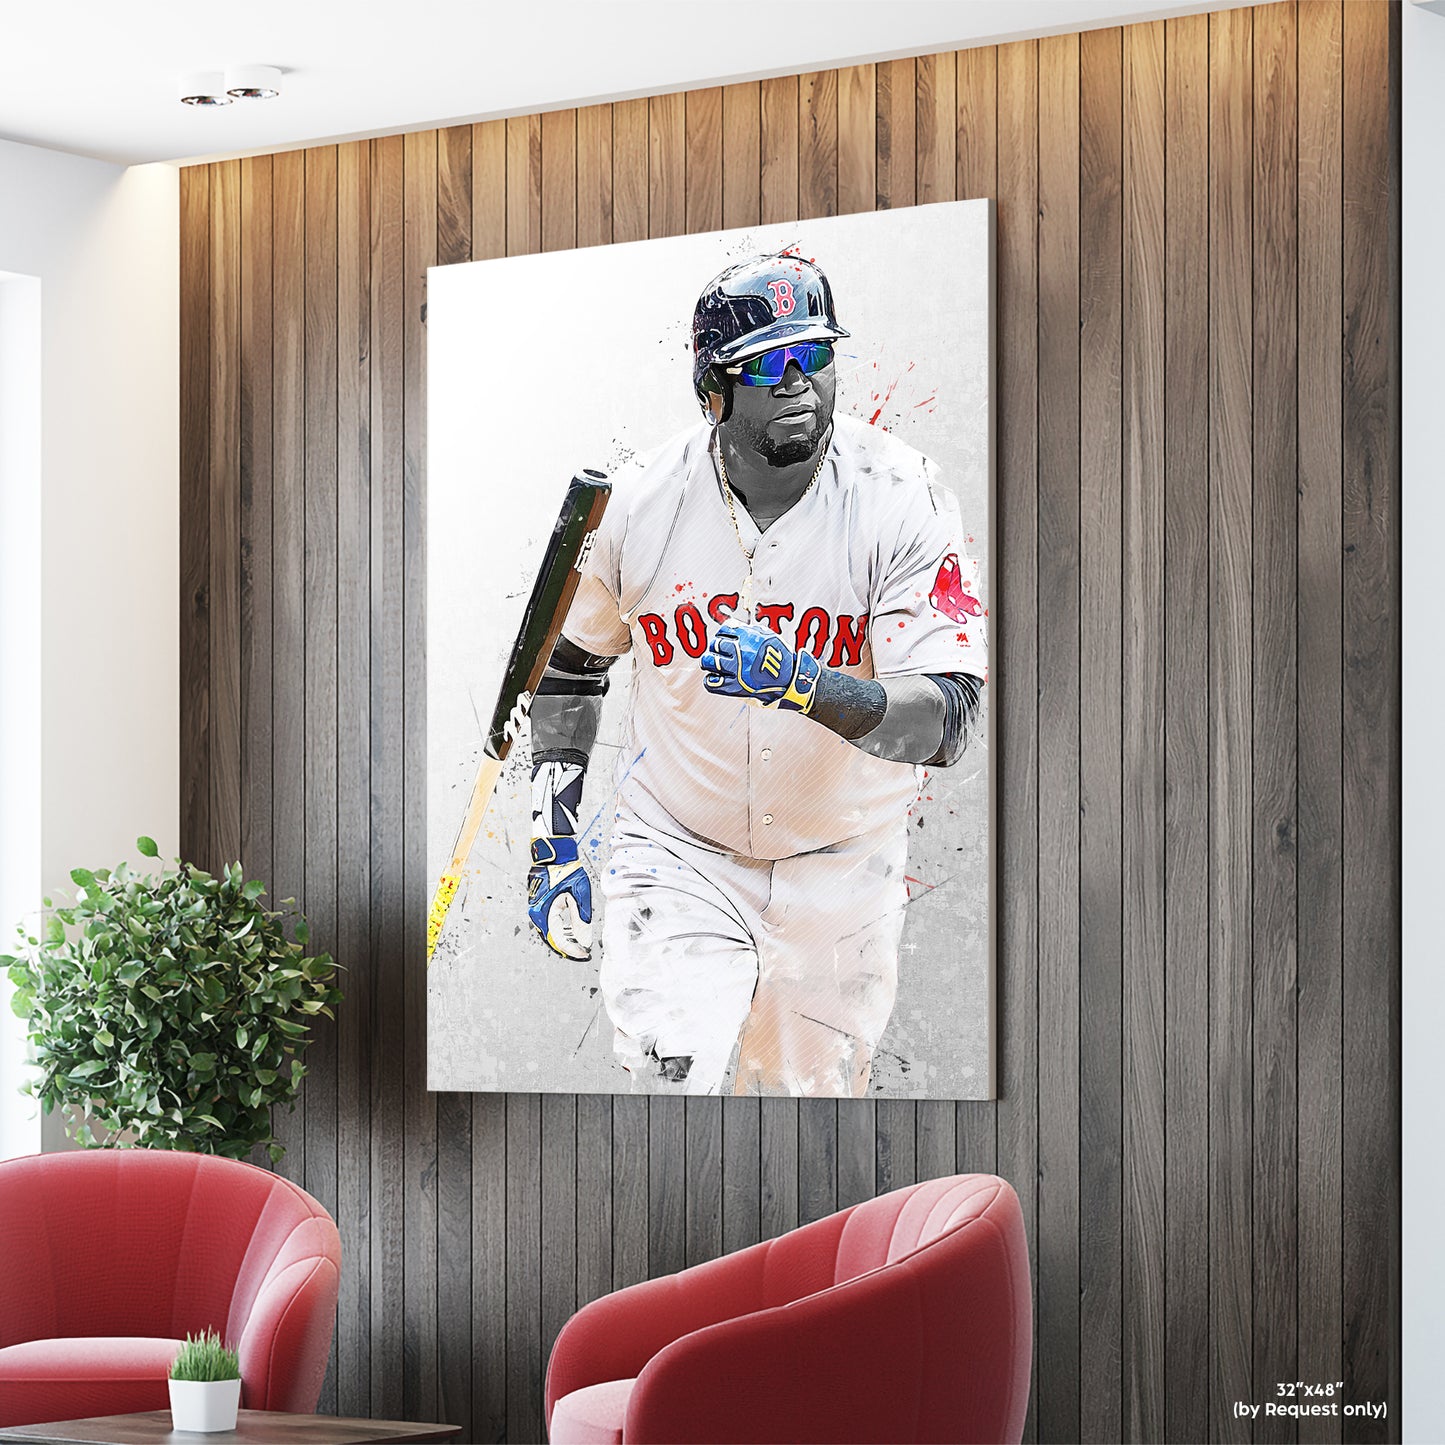 David Ortiz Poster and Canvas, Baseball Print, MLB Wall Decor